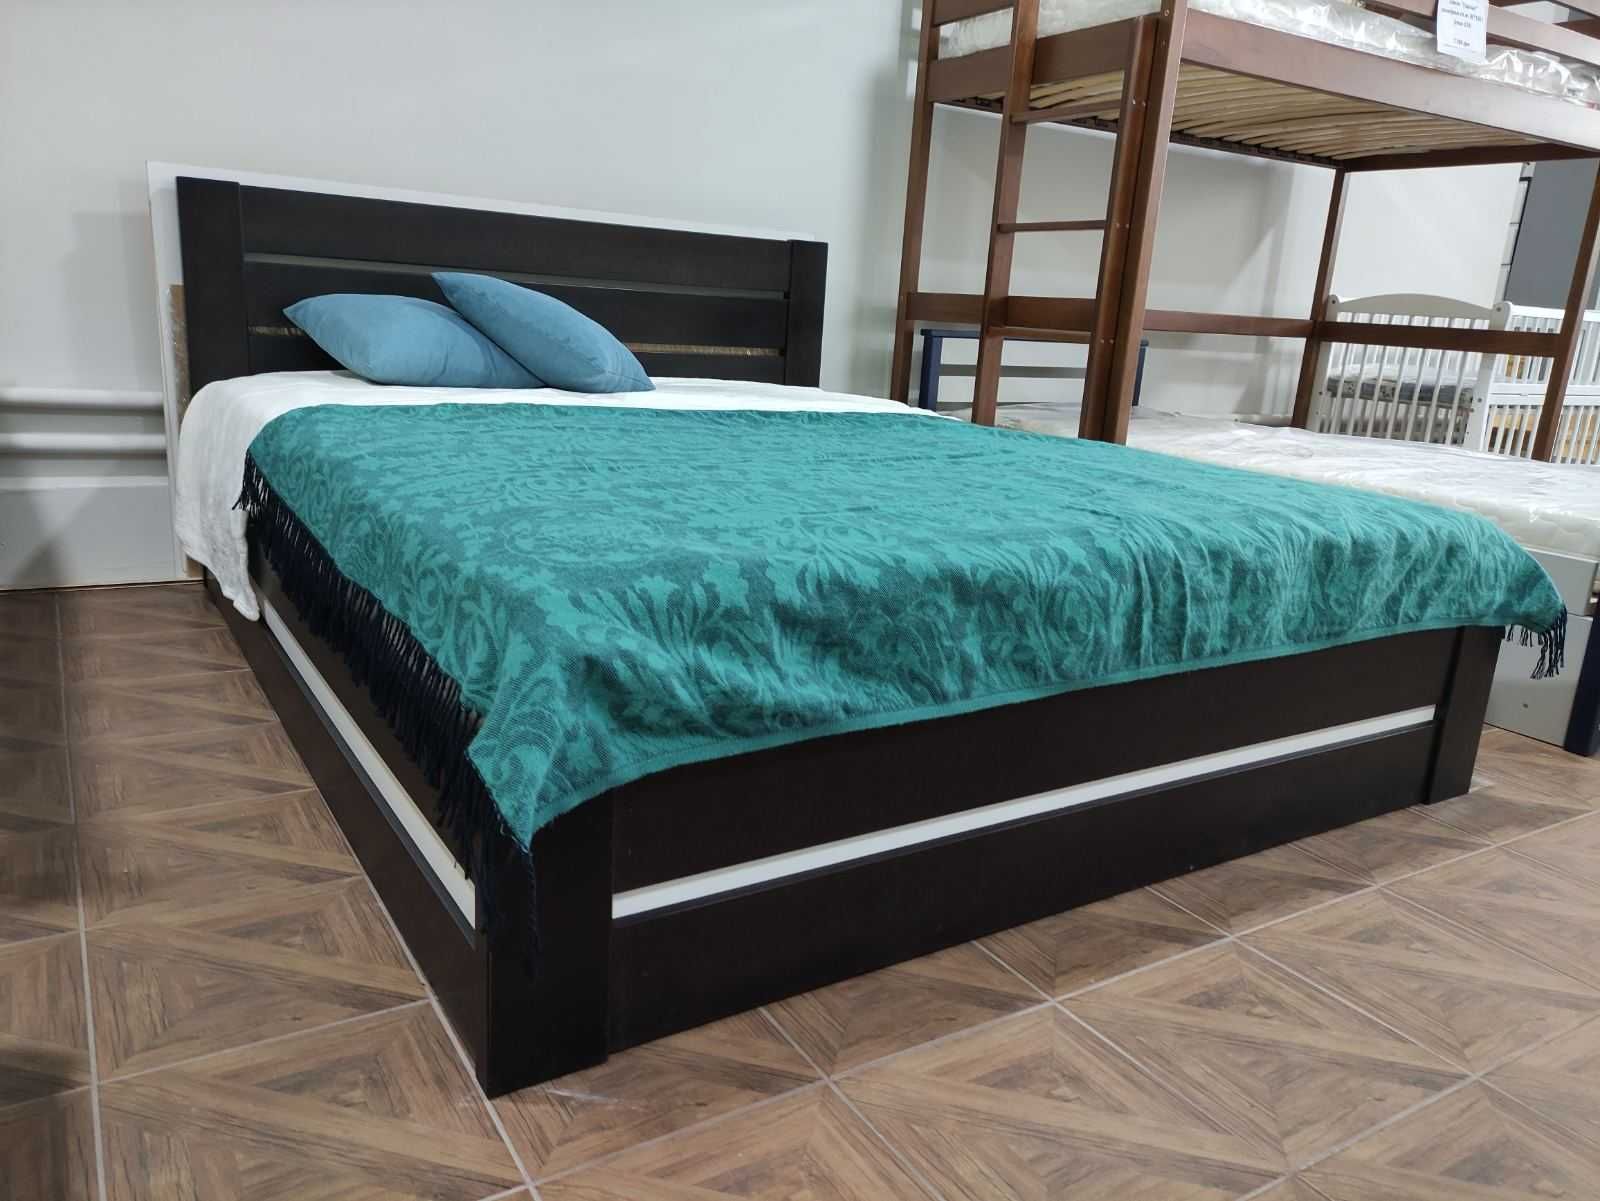 Ліжка дерев'яні виготовлені з масиву бука